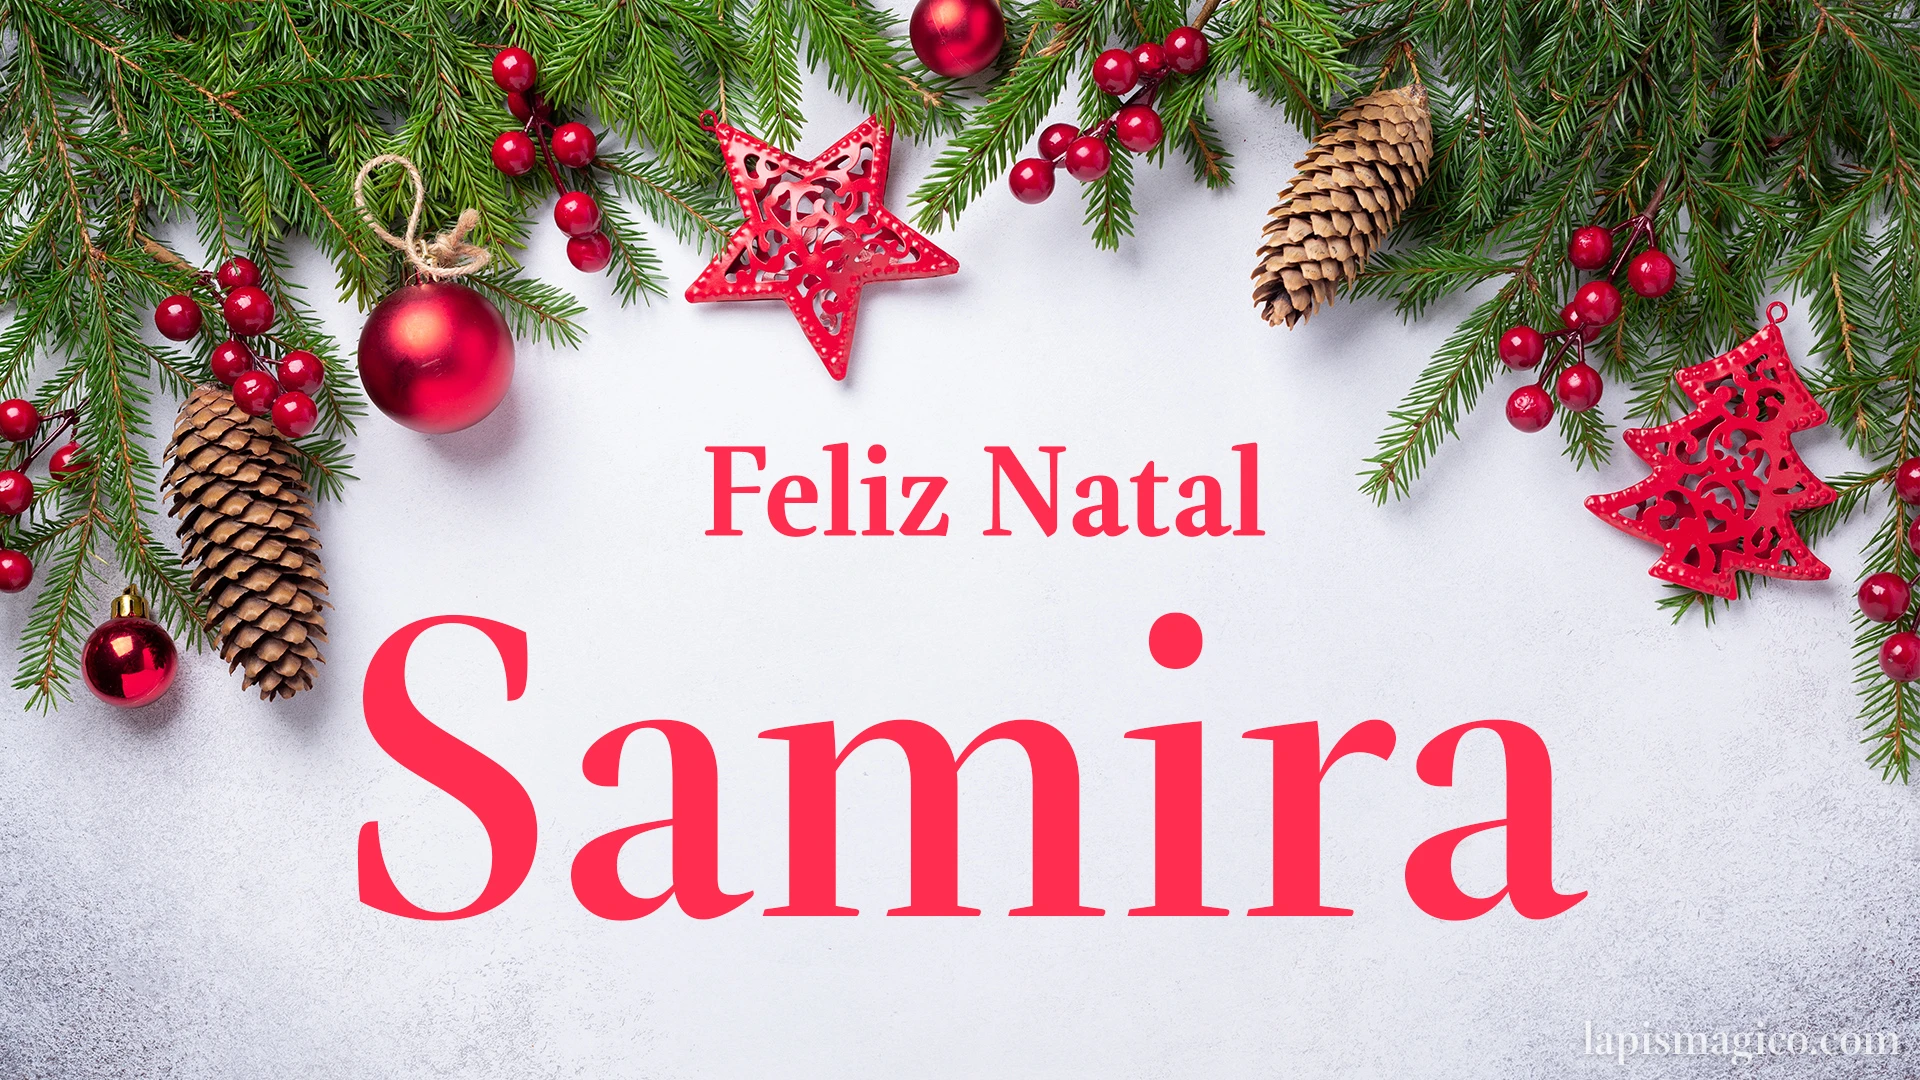 Oh Samira, cinco postais de Feliz Natal Postal com o teu nome